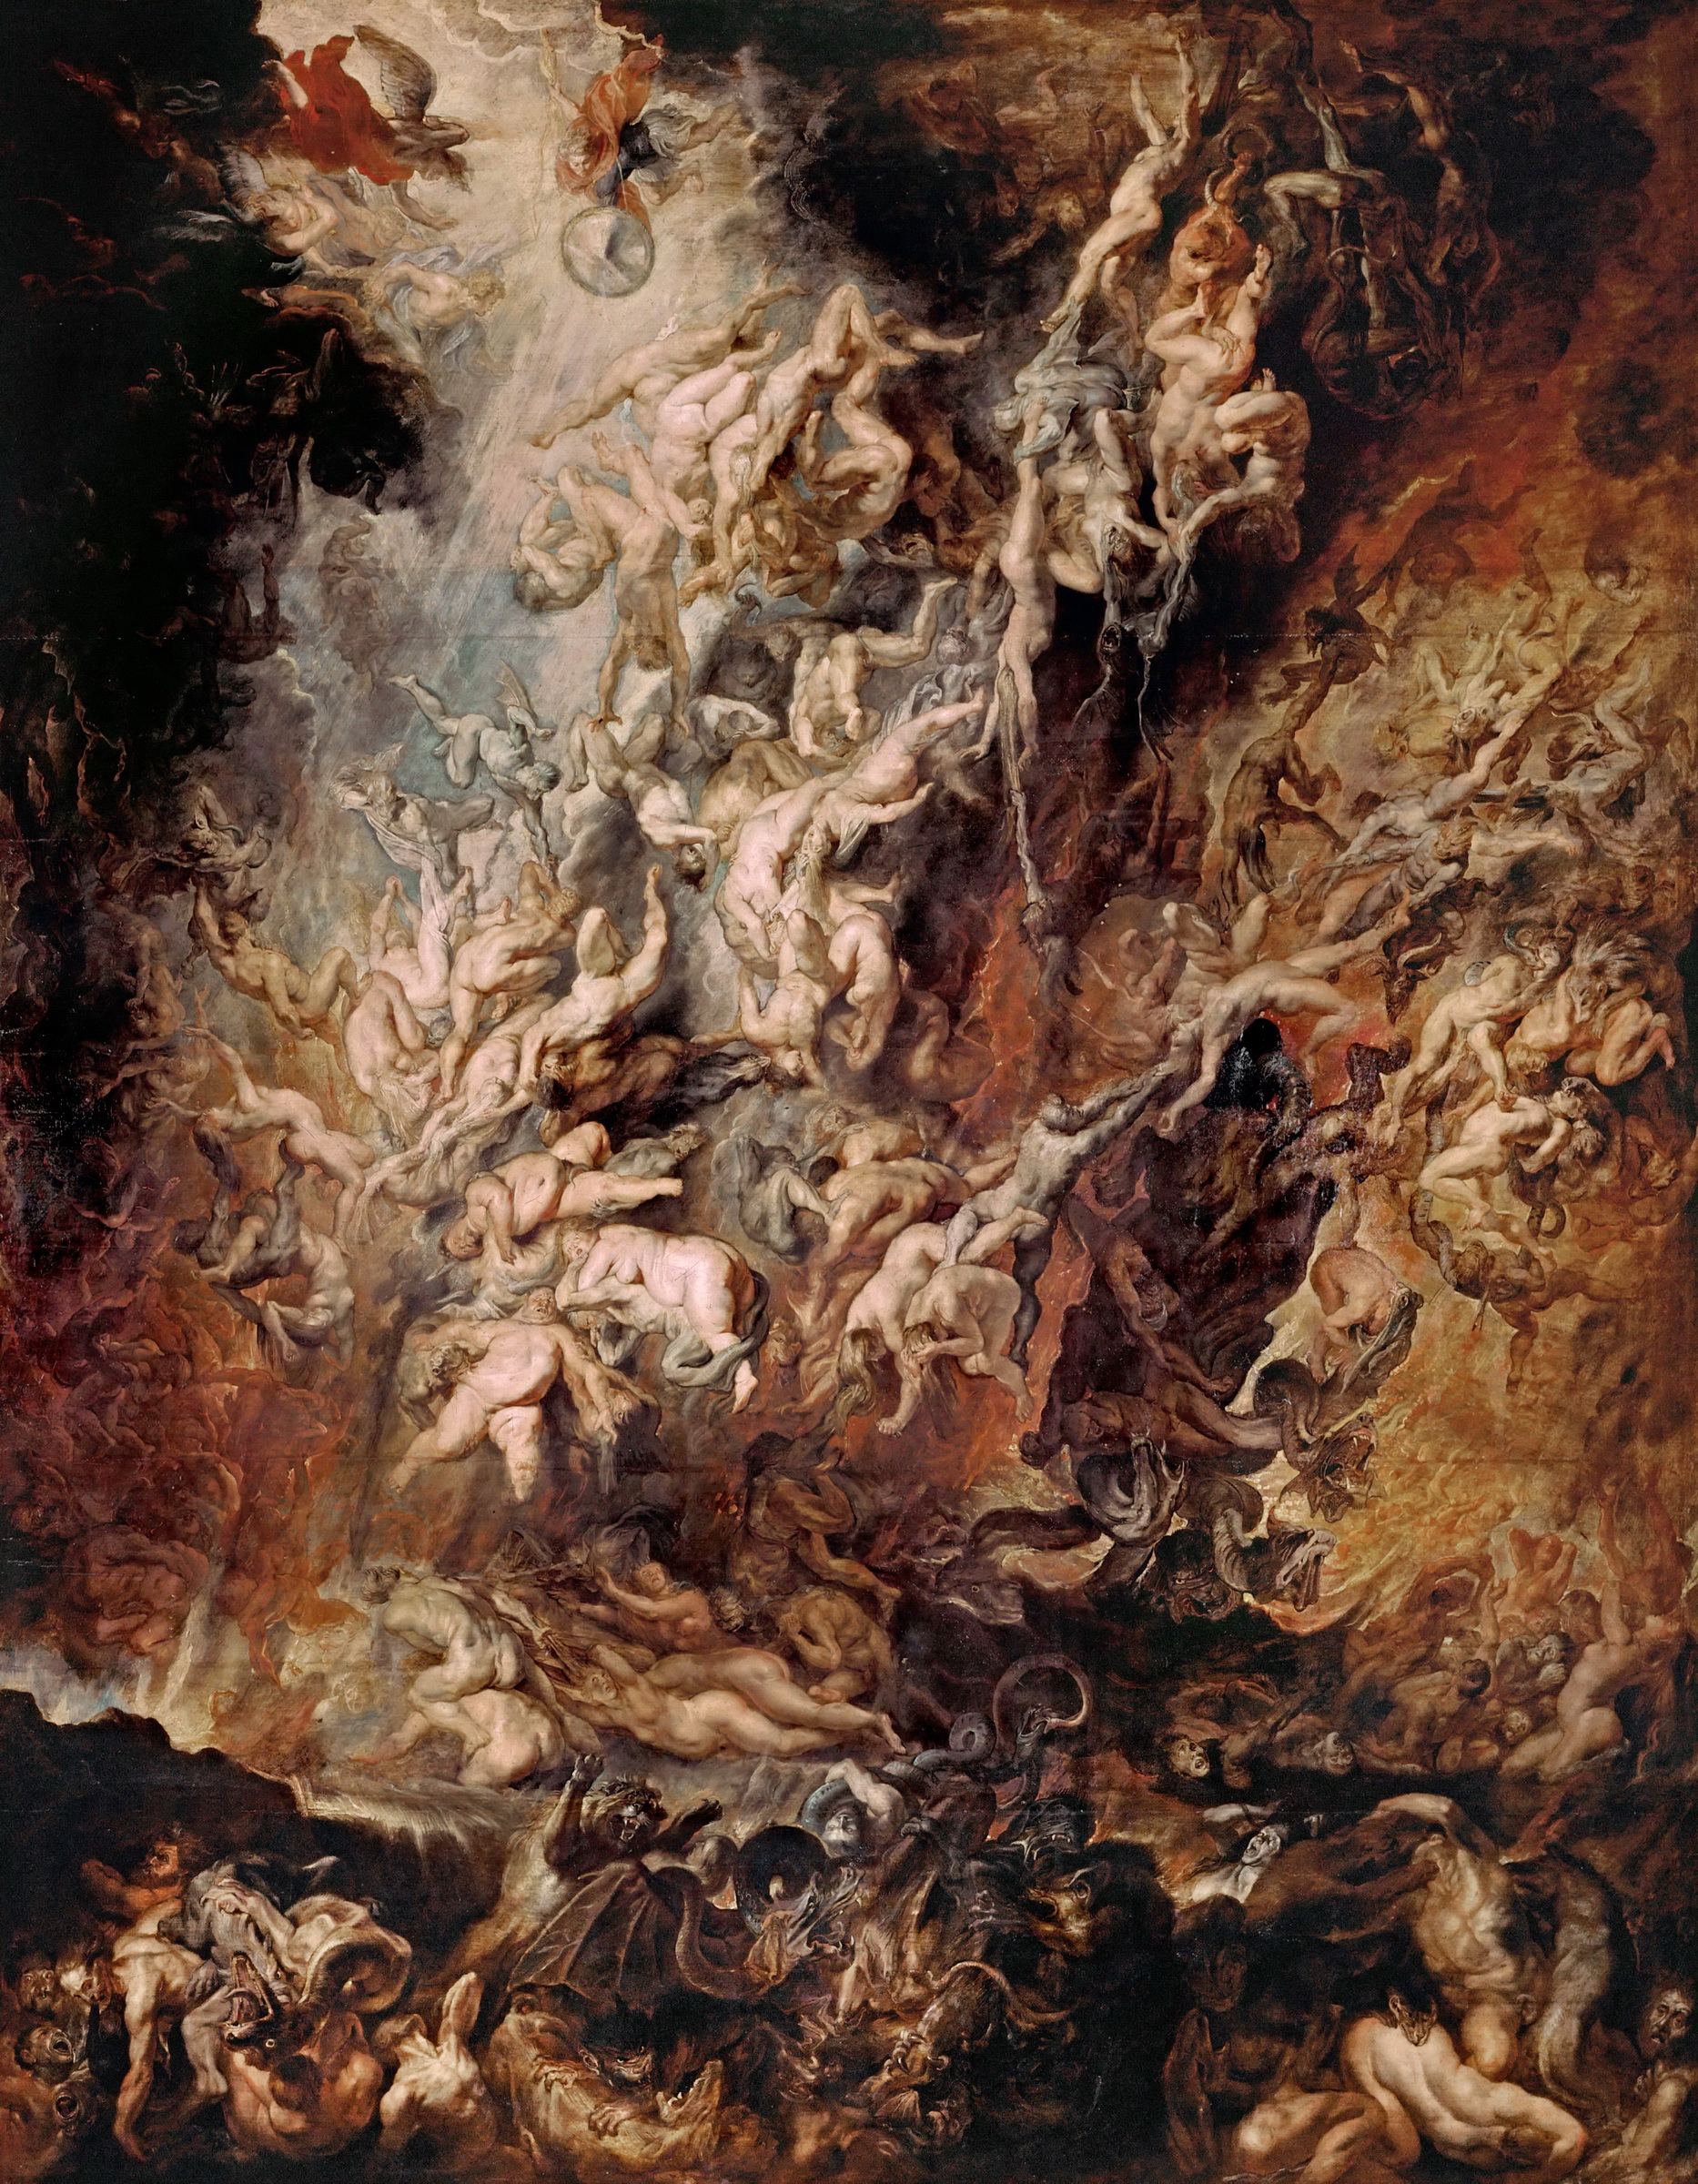 A kárhozottak bukása by Peter Paul Rubens - 1620 - 2,86 x 2,24 m 